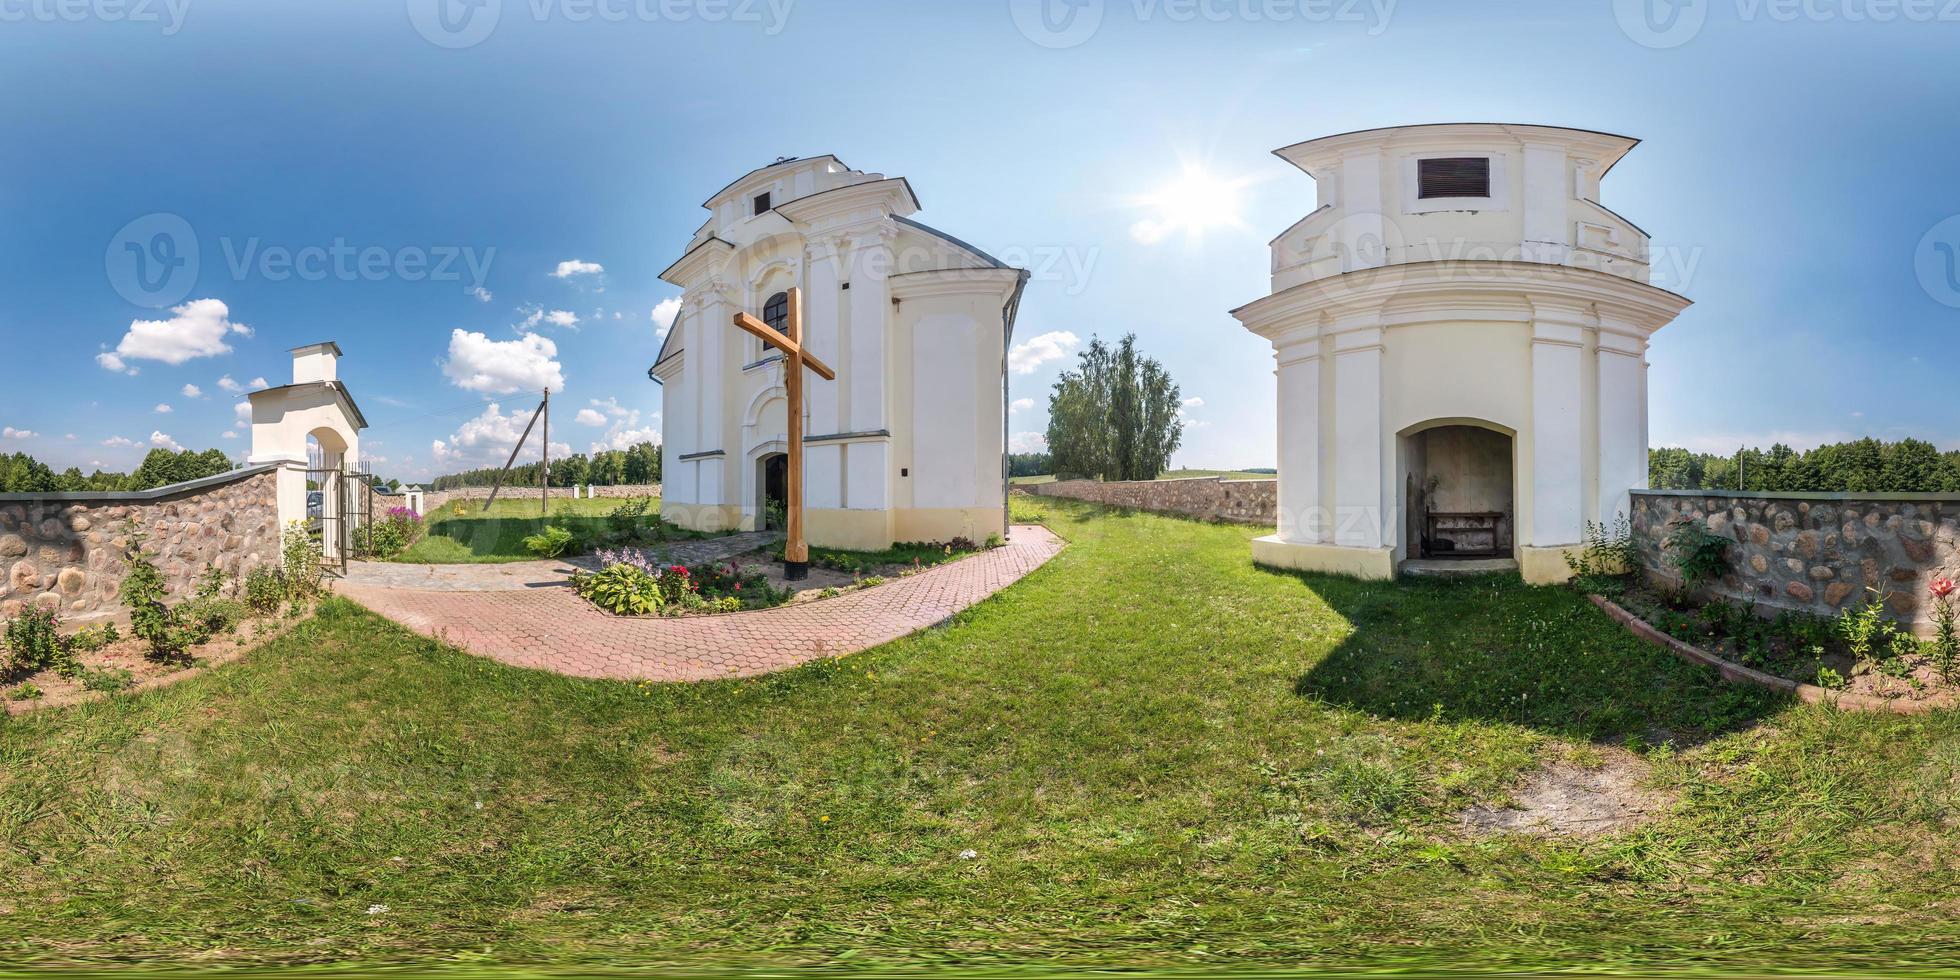 panorama hdri esférico completo de 360 grados en el patio cerca de una pequeña iglesia católica en proyección equirectangular con cenit y nadir, contenido vr foto